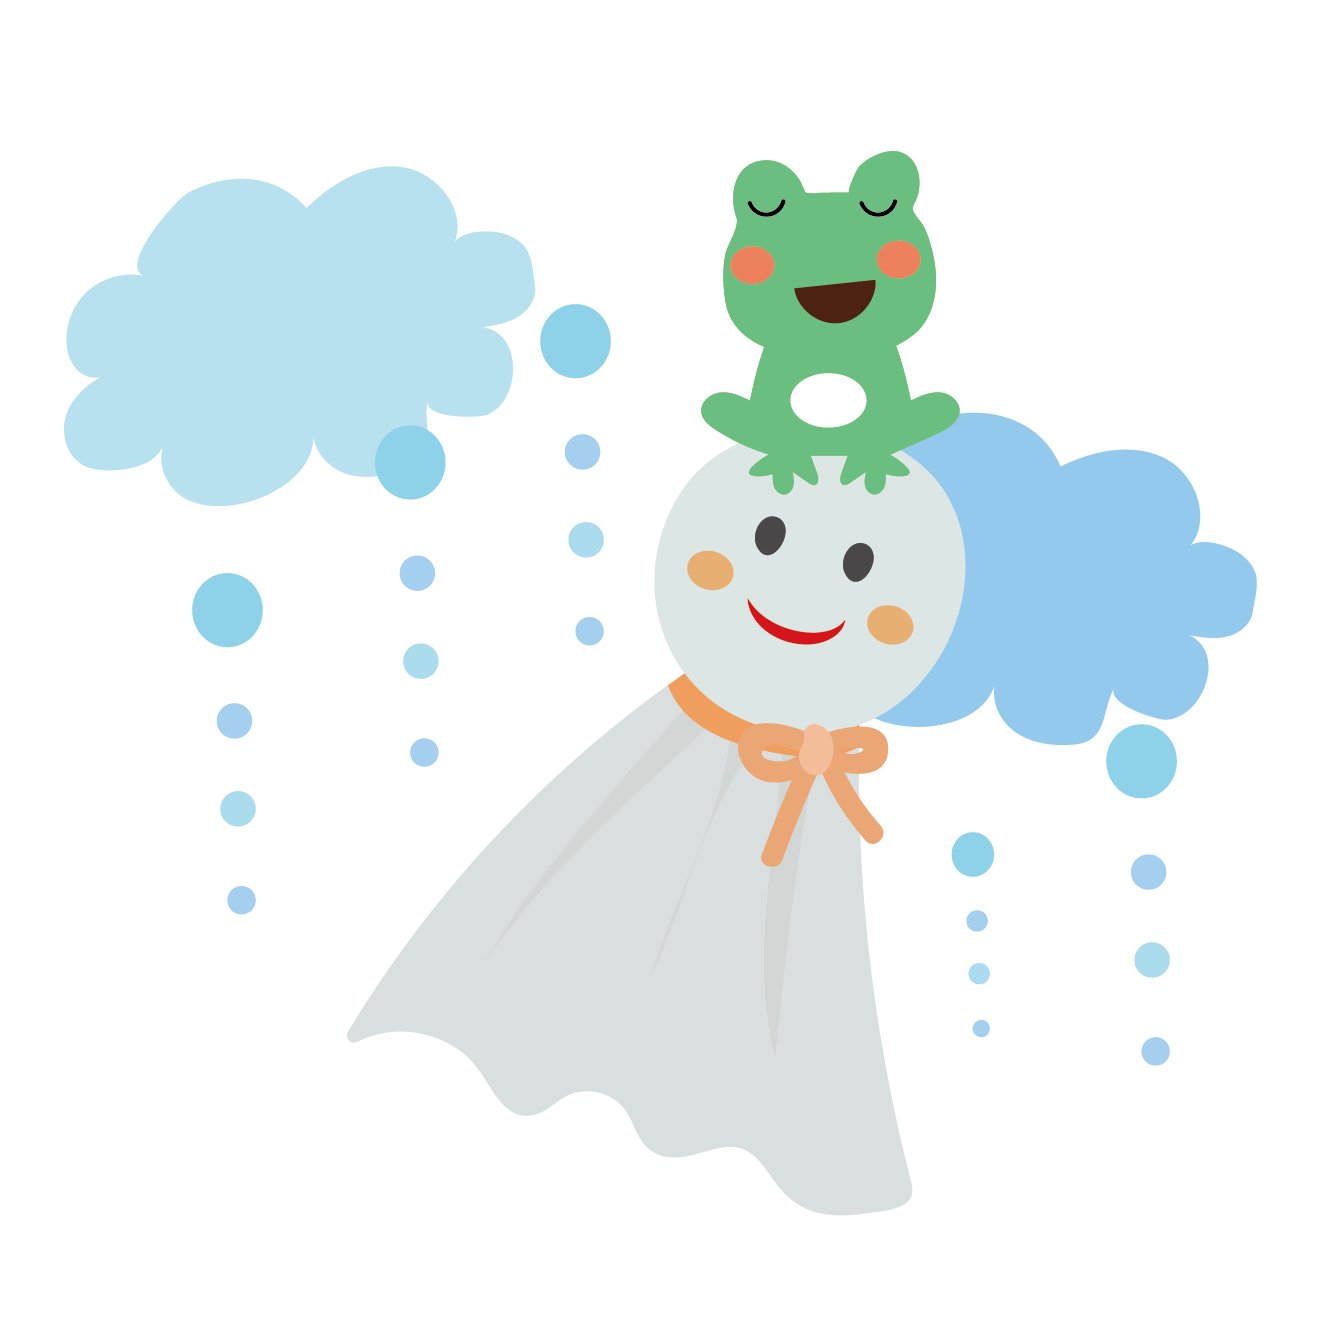 カエル（蛙）とてるてる坊主のイラスト【梅雨】